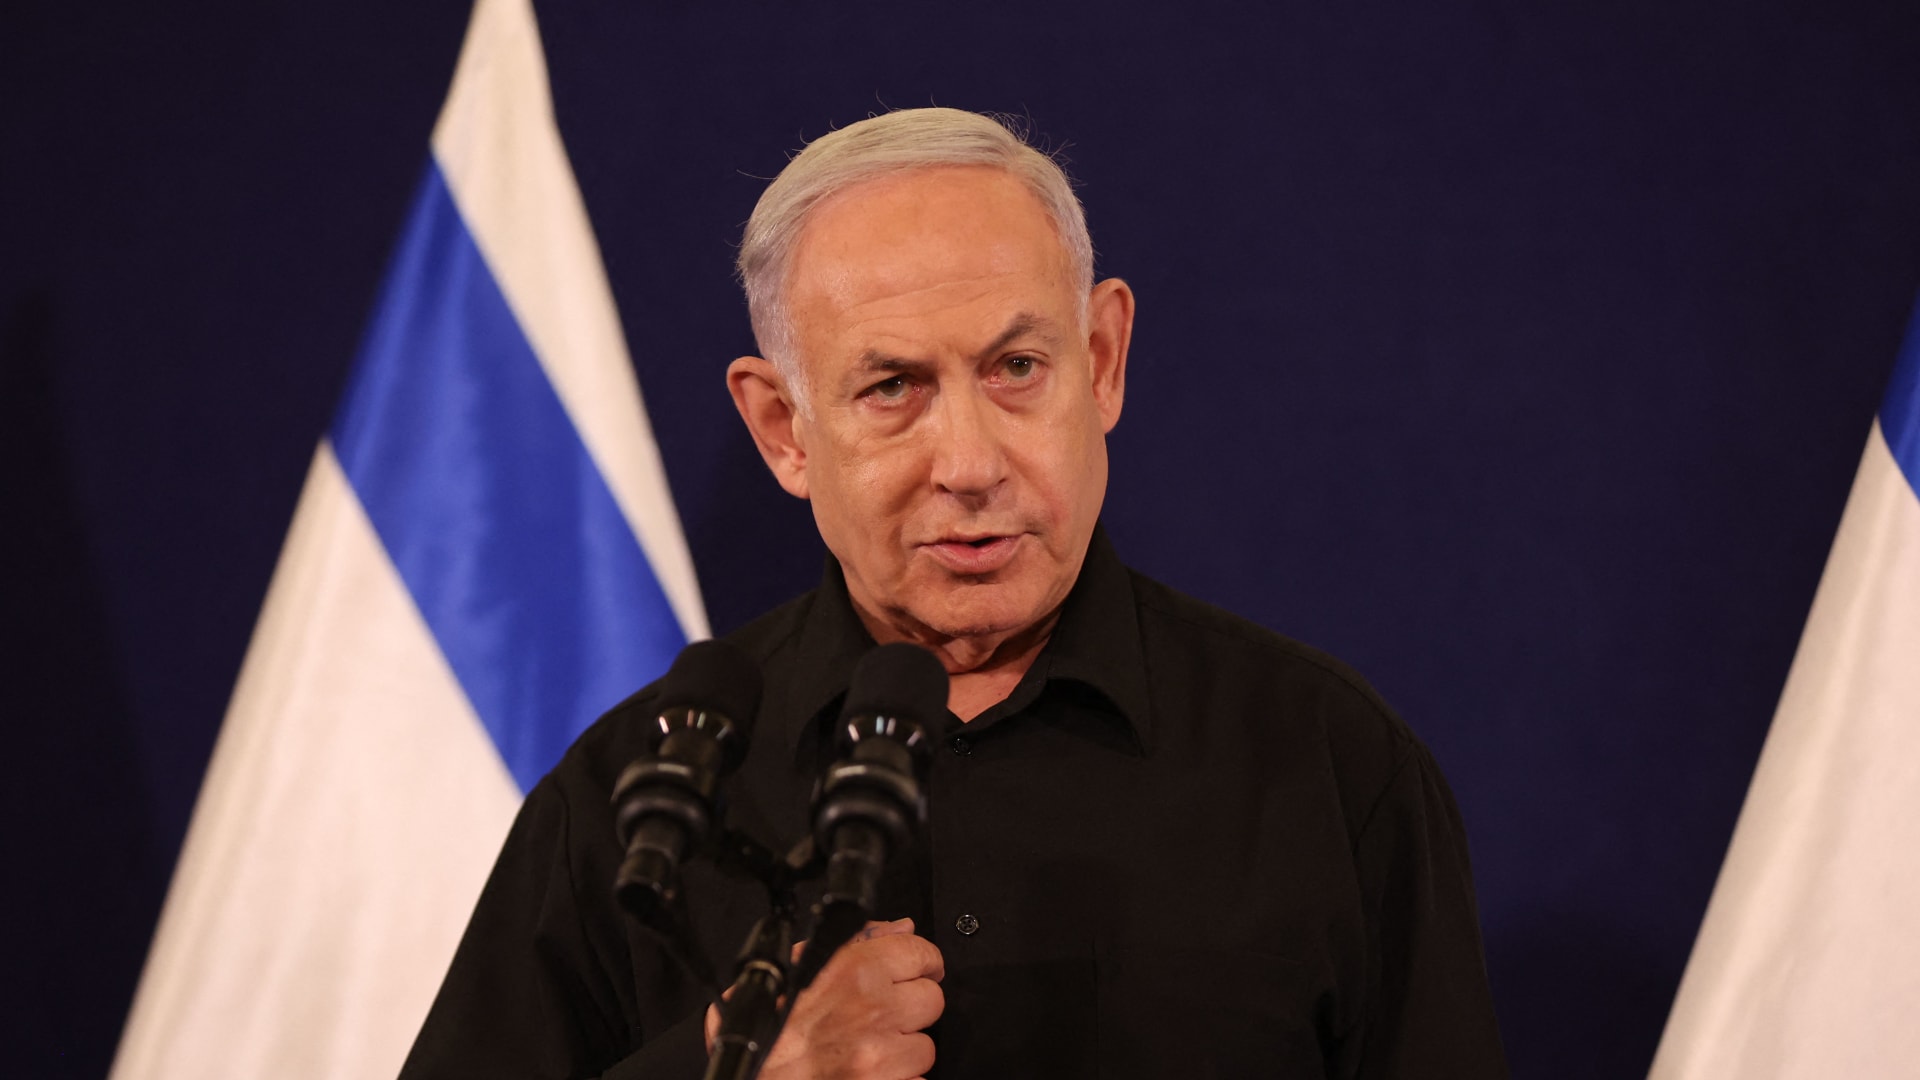 بعد استقالته من الخارجية لدعم أمريكا لإسرائيل.. جوش بول: "هناك انفصال بين قيمنا وأفعالنا"